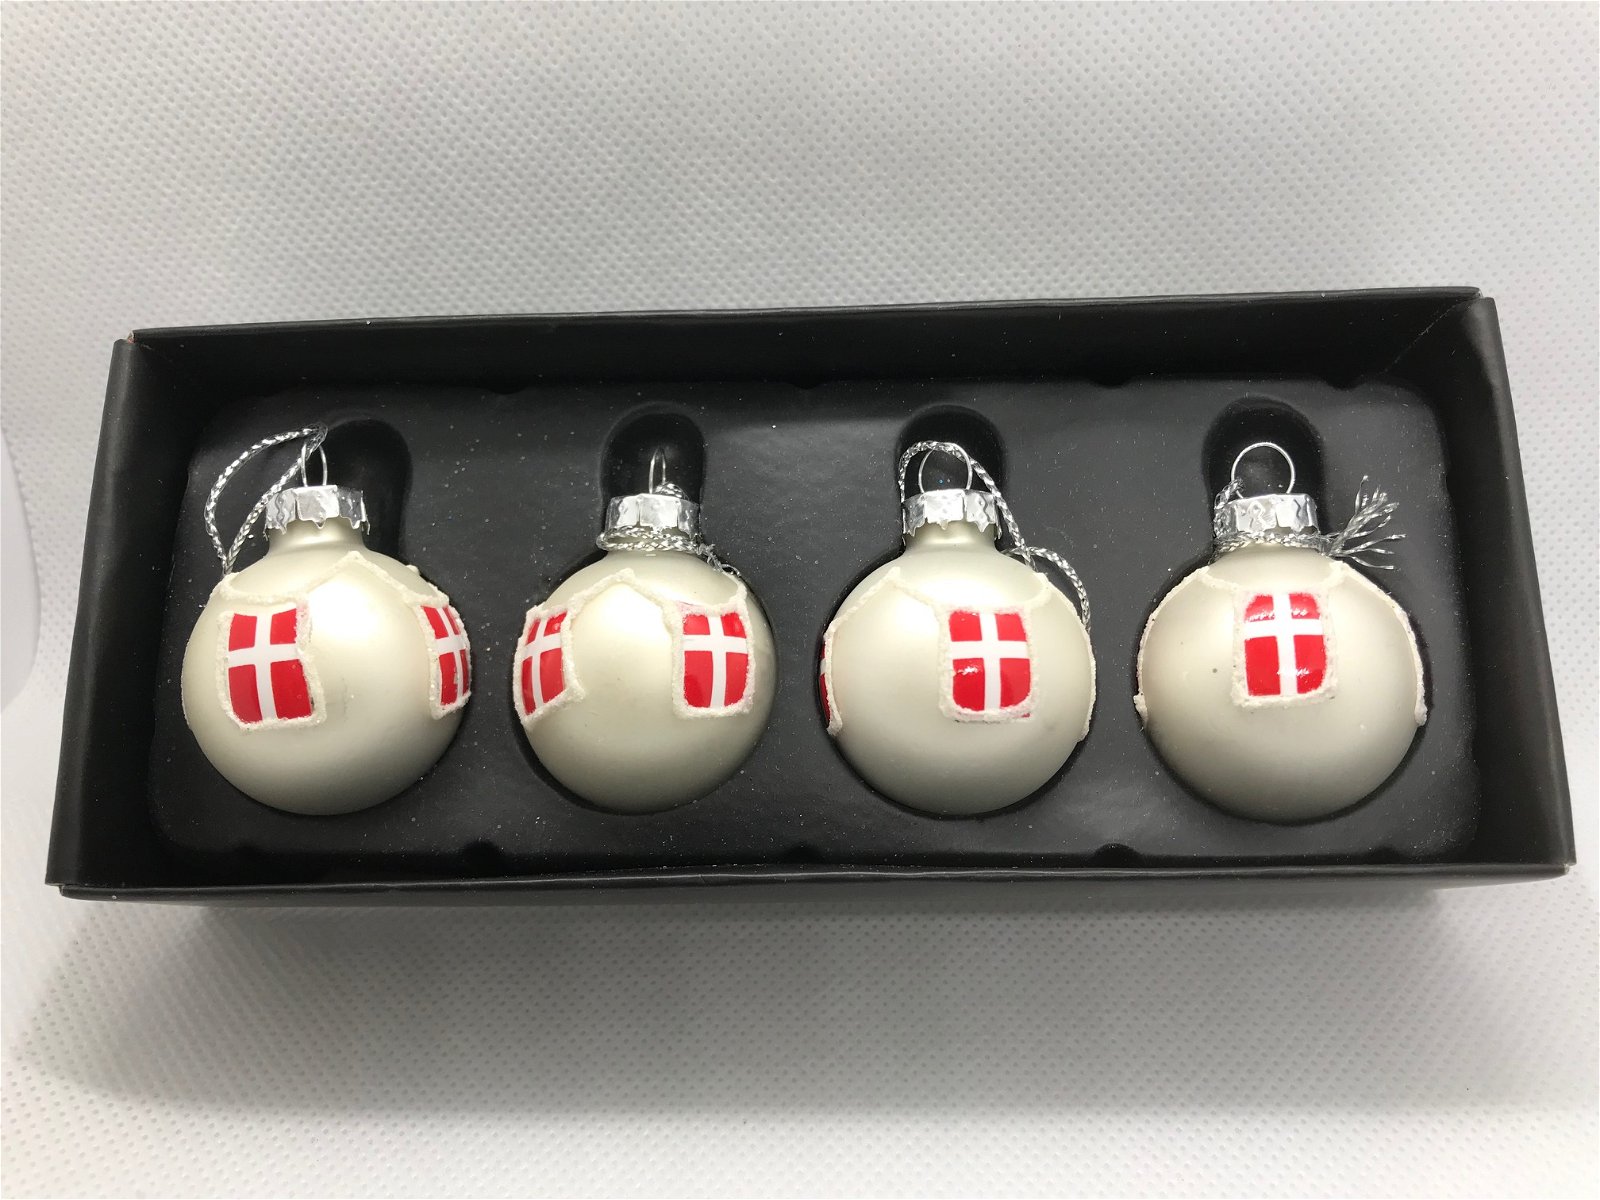 4 white Christmas bulbs